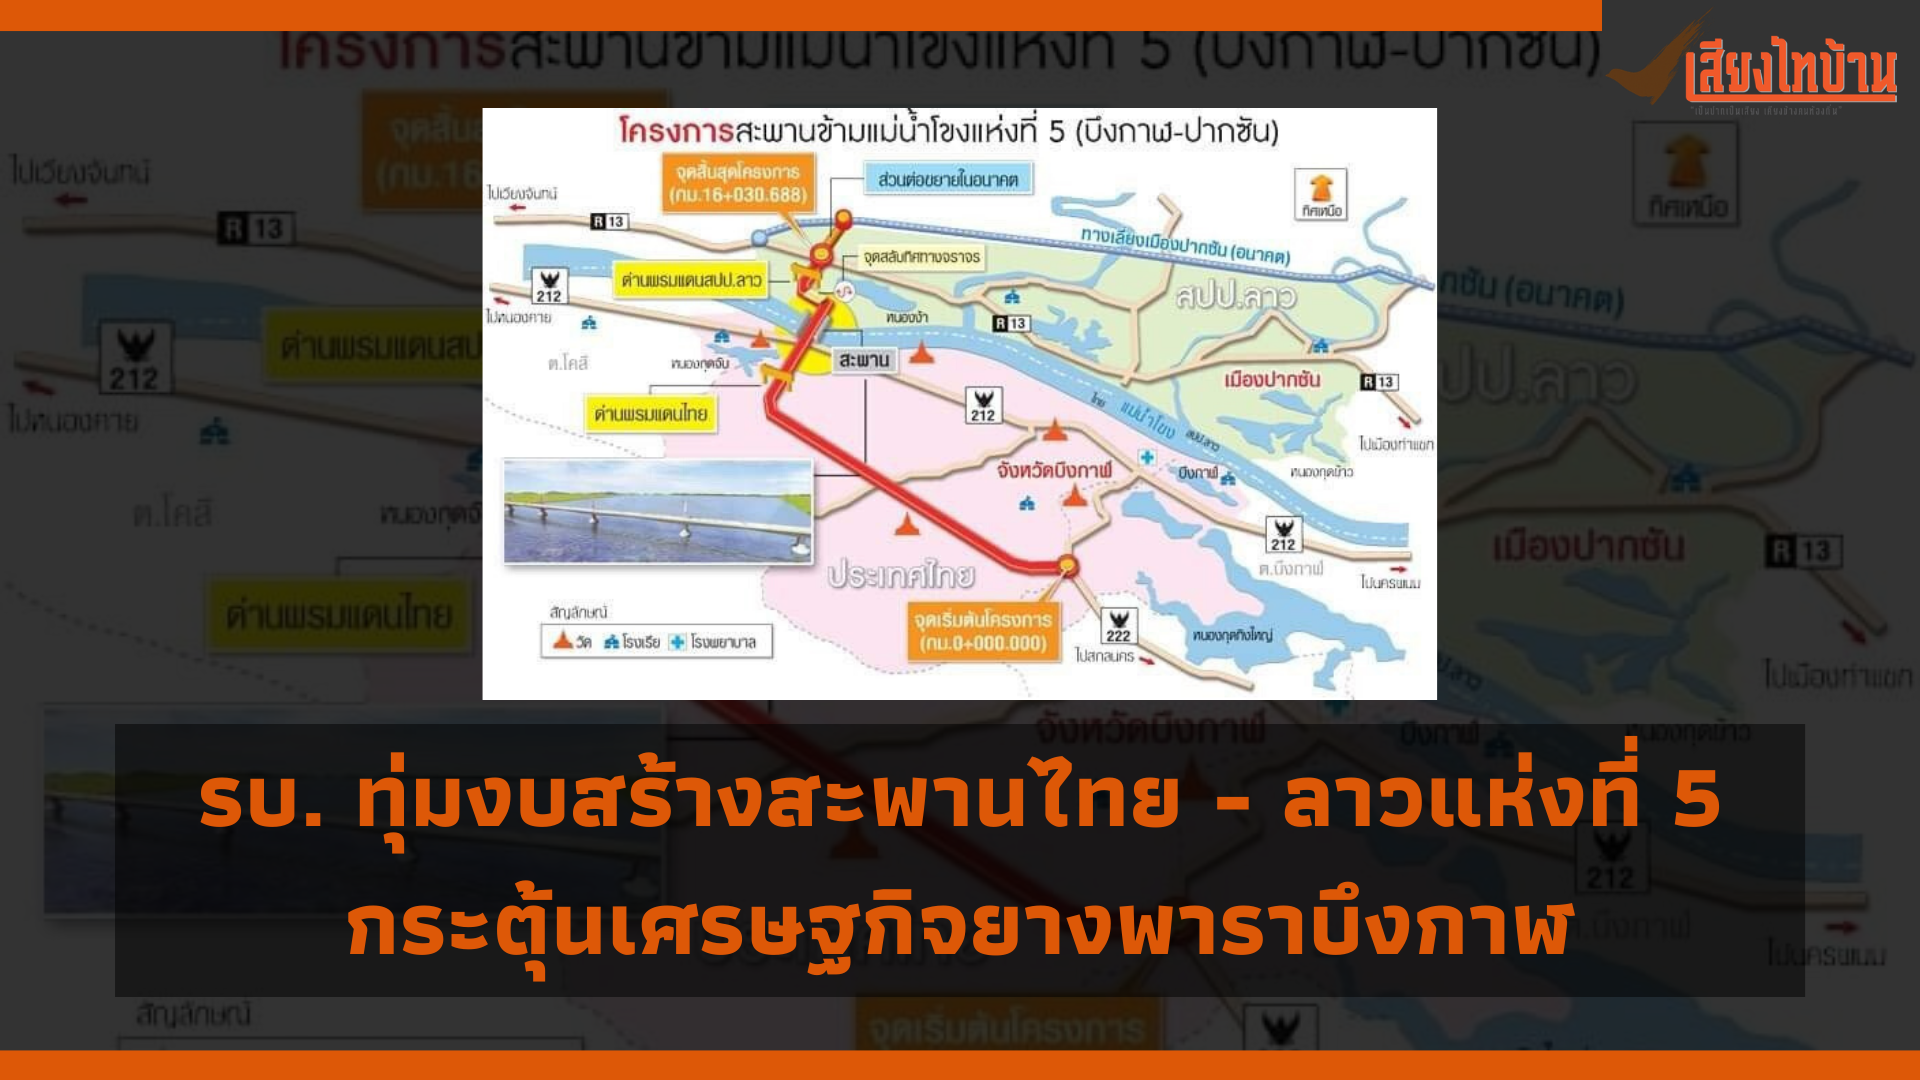 รัฐบาลทุ่ม 3,930 ล้าน สร้างสะพานมิตรภาพไทย - ลาวแห่งที่ 5 หวังดันเศรษฐกิจยางพารา